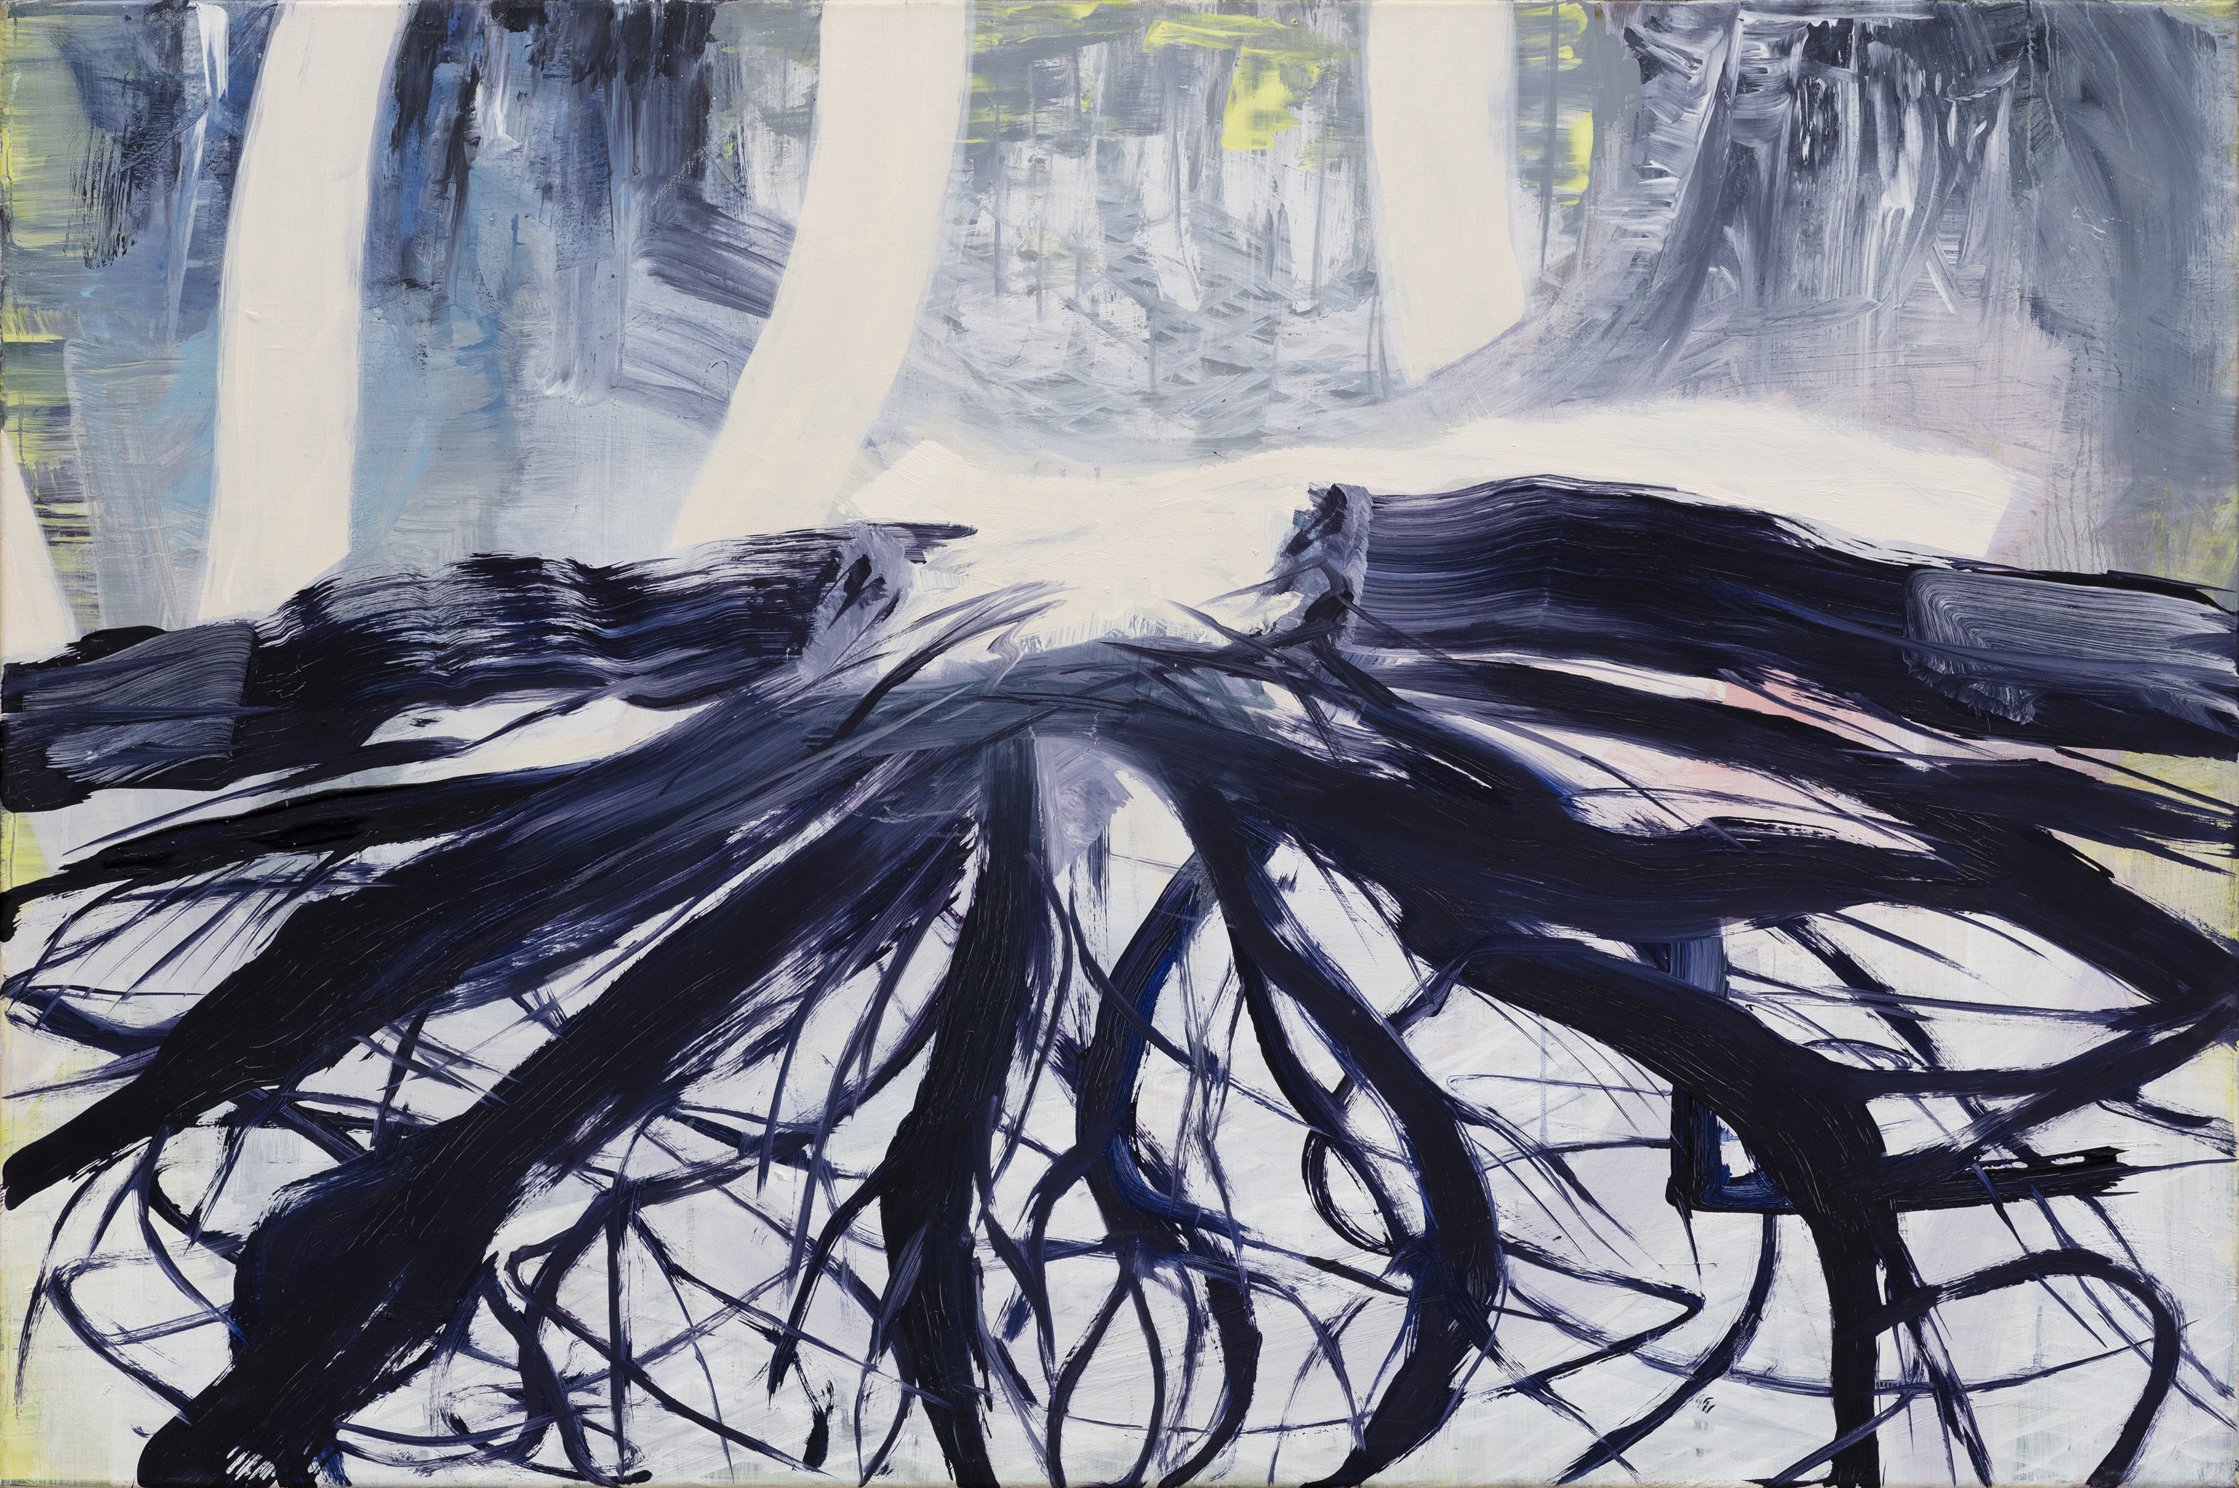 Kraft der Natur lV, 2020, oil on canvas, 80 x 120 cm